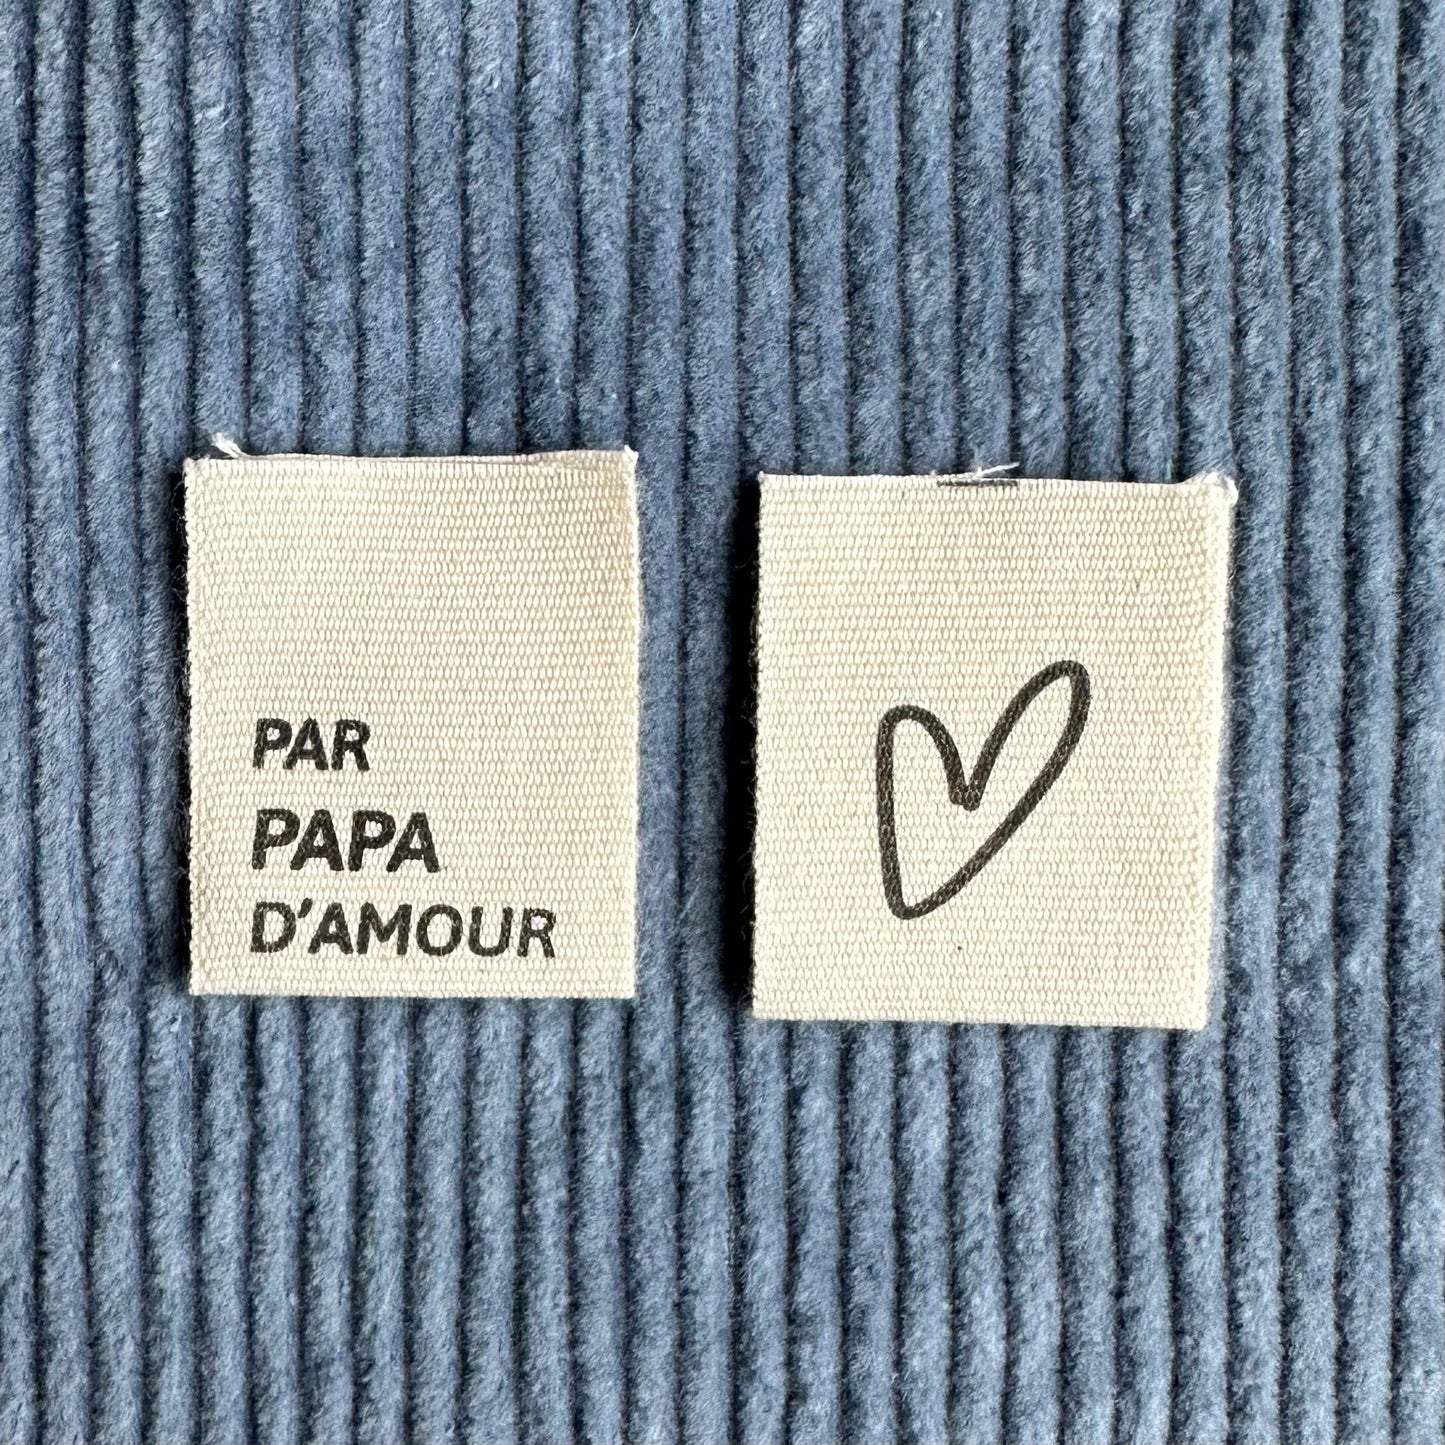 PAR PAPA D'AMOUR - Étiquettes de coton en français